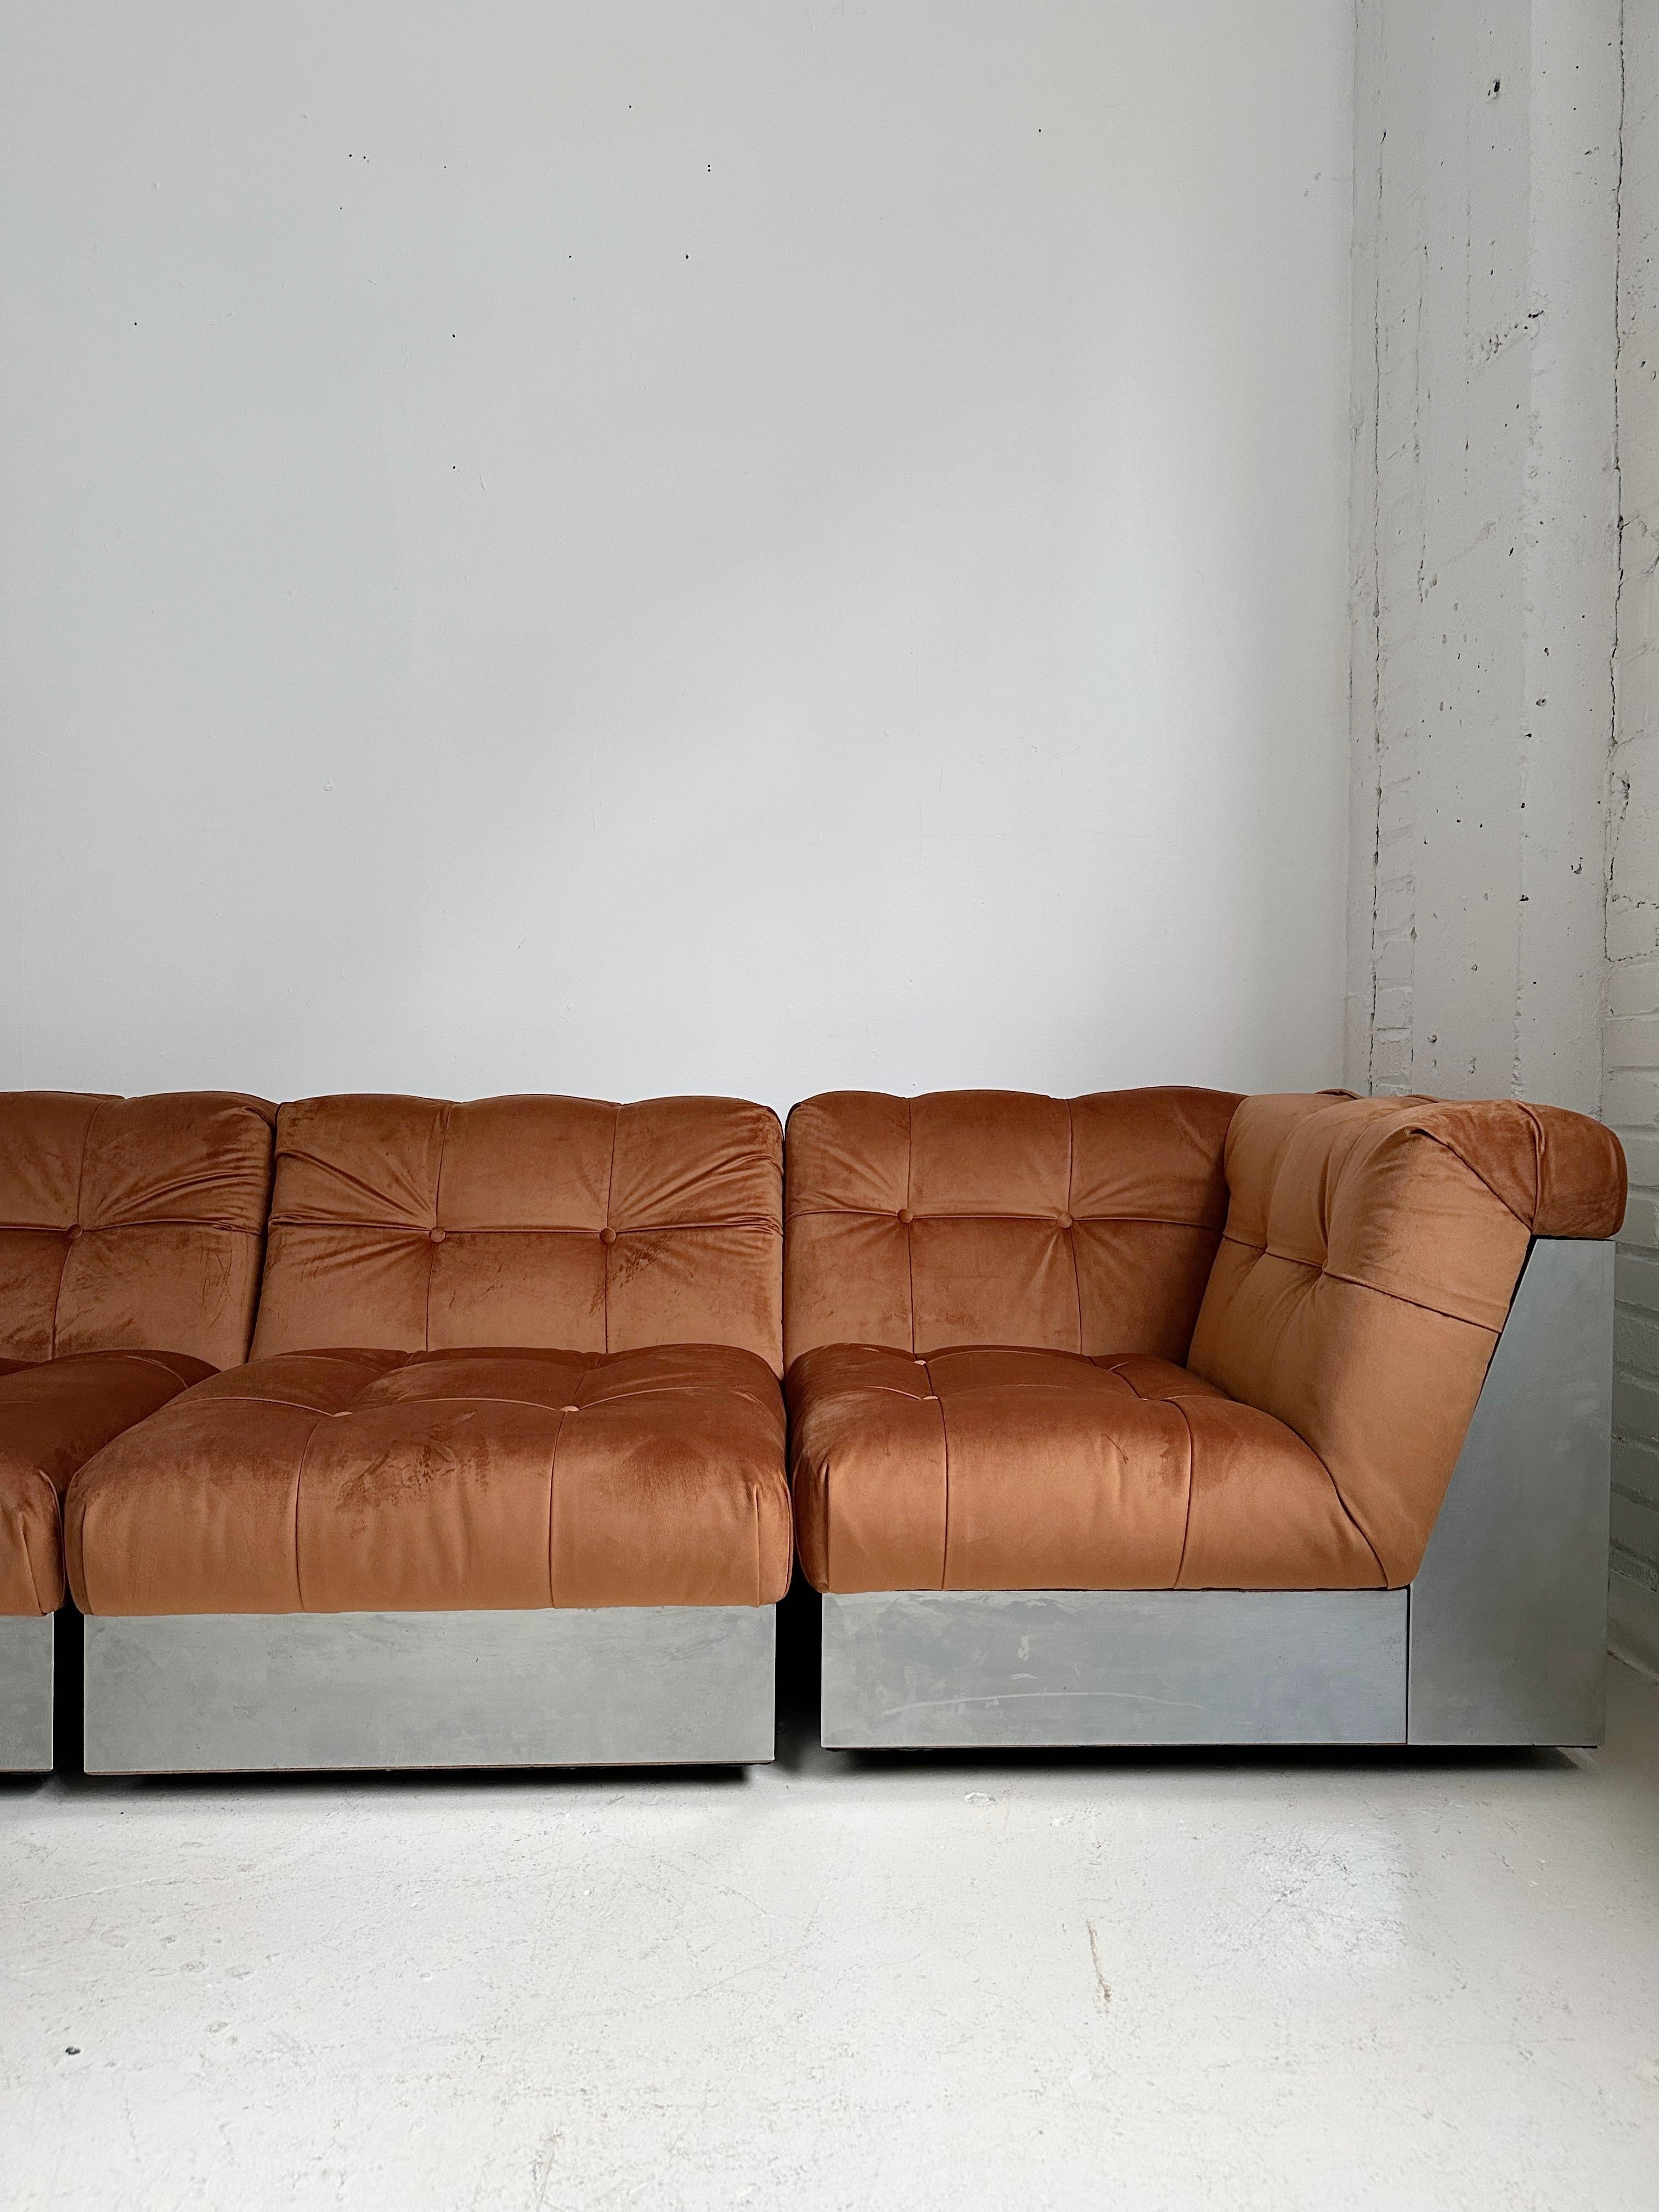 Samt & Stahlgestell 4 Pieces Modulares Sofa att. to Canasta by Giorgio Montani 1